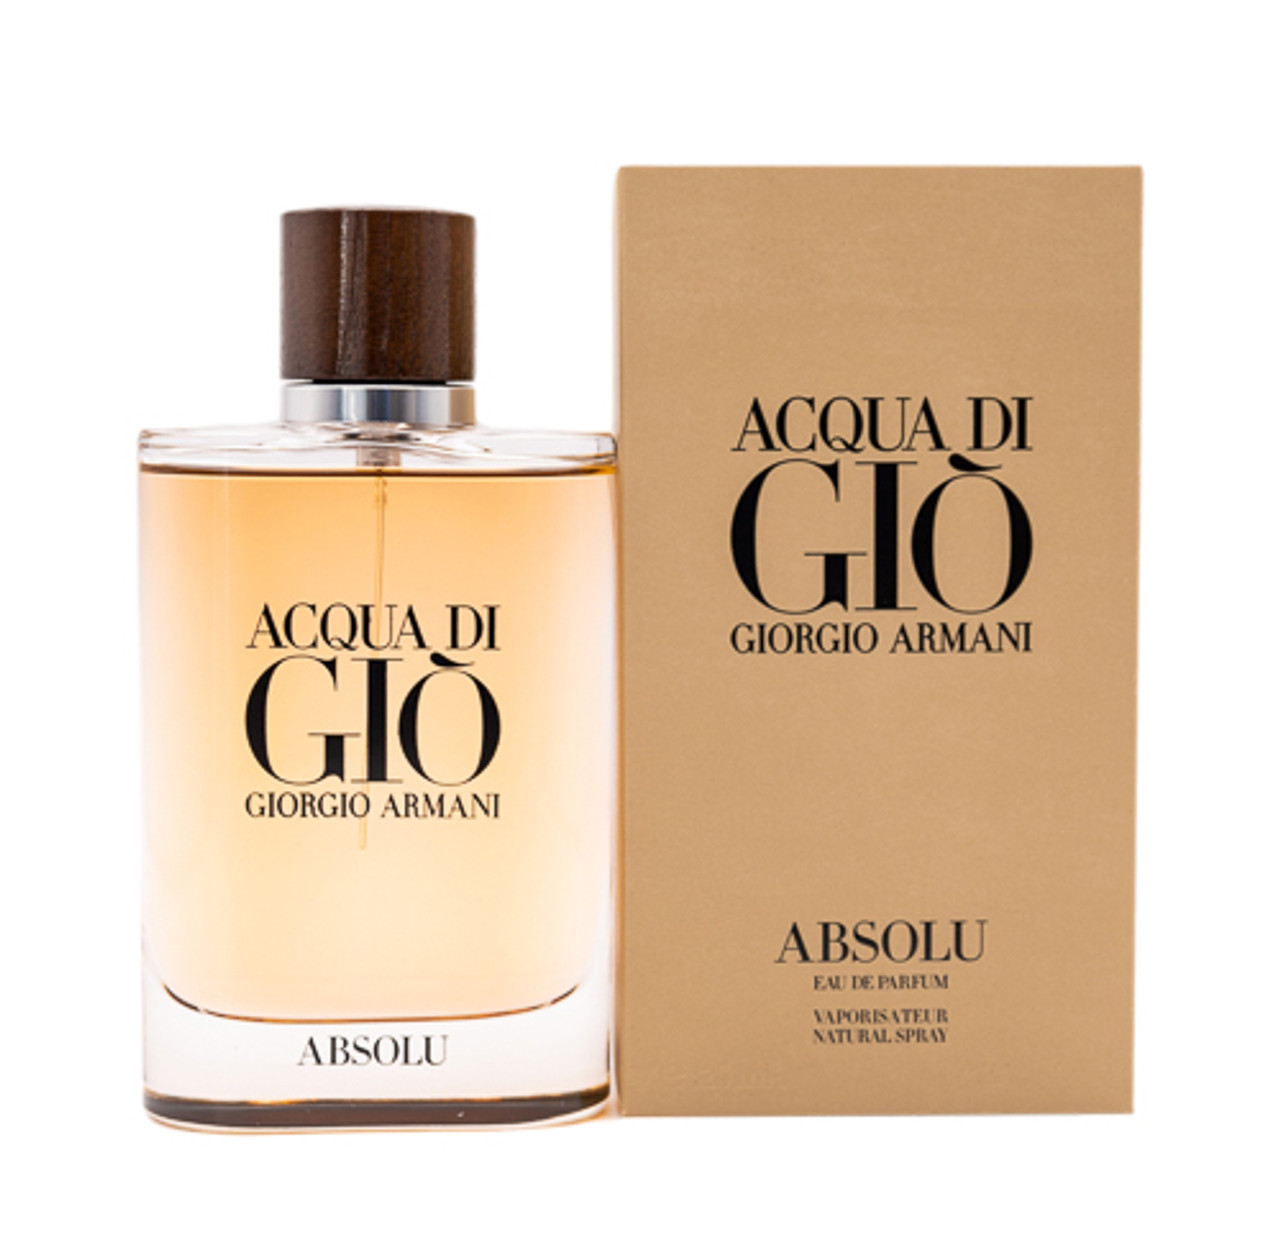 Giorgio Armani Acqua Di Gio Eau de Toilette, Cologne for Men, 1 oz Full  Size 